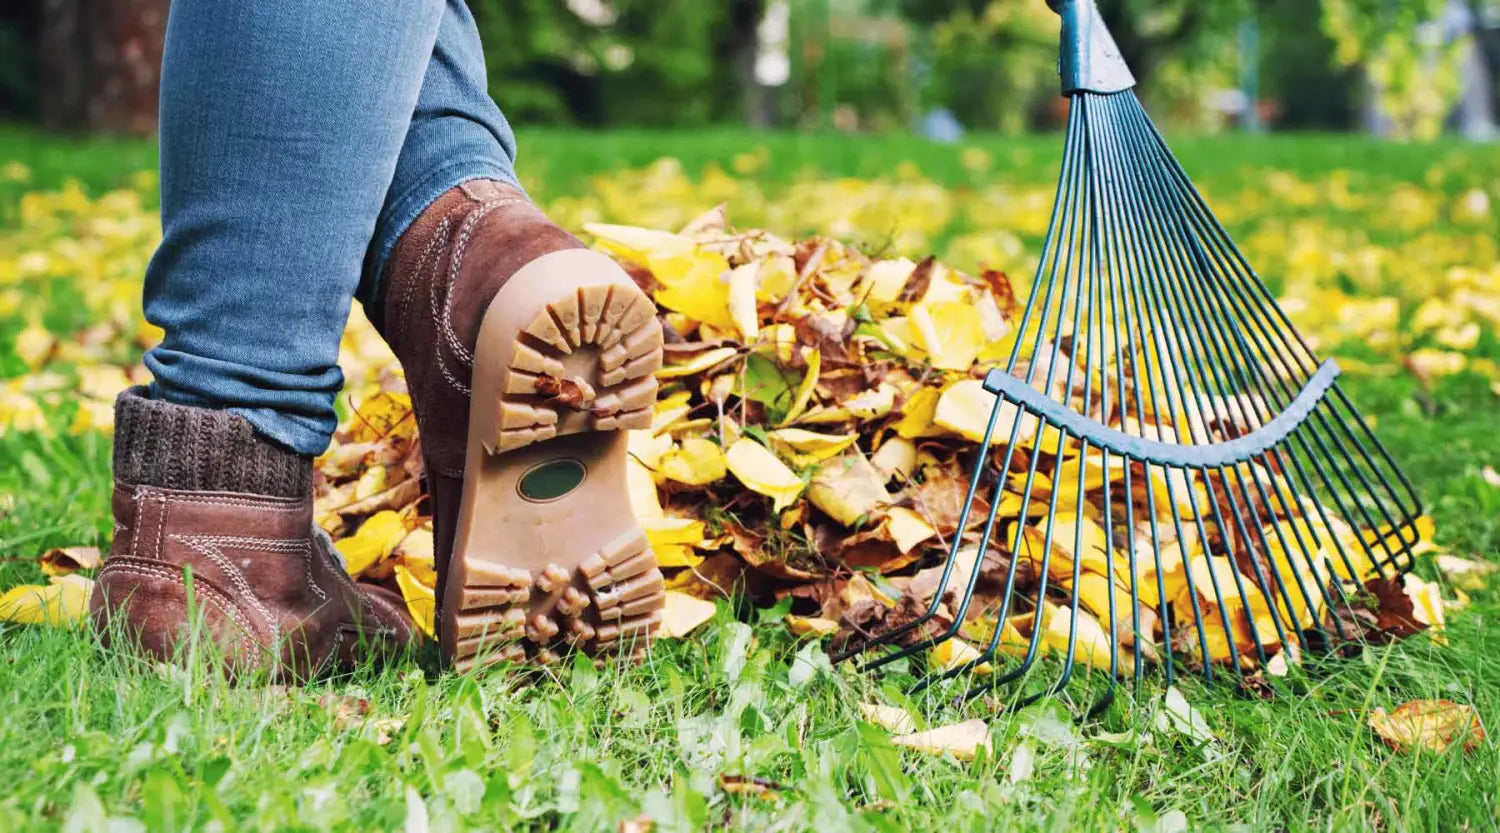 Die wichtigsten Gartengeräte im Herbst: Rechen & Laubbesen für eine effektive Gartenpflege